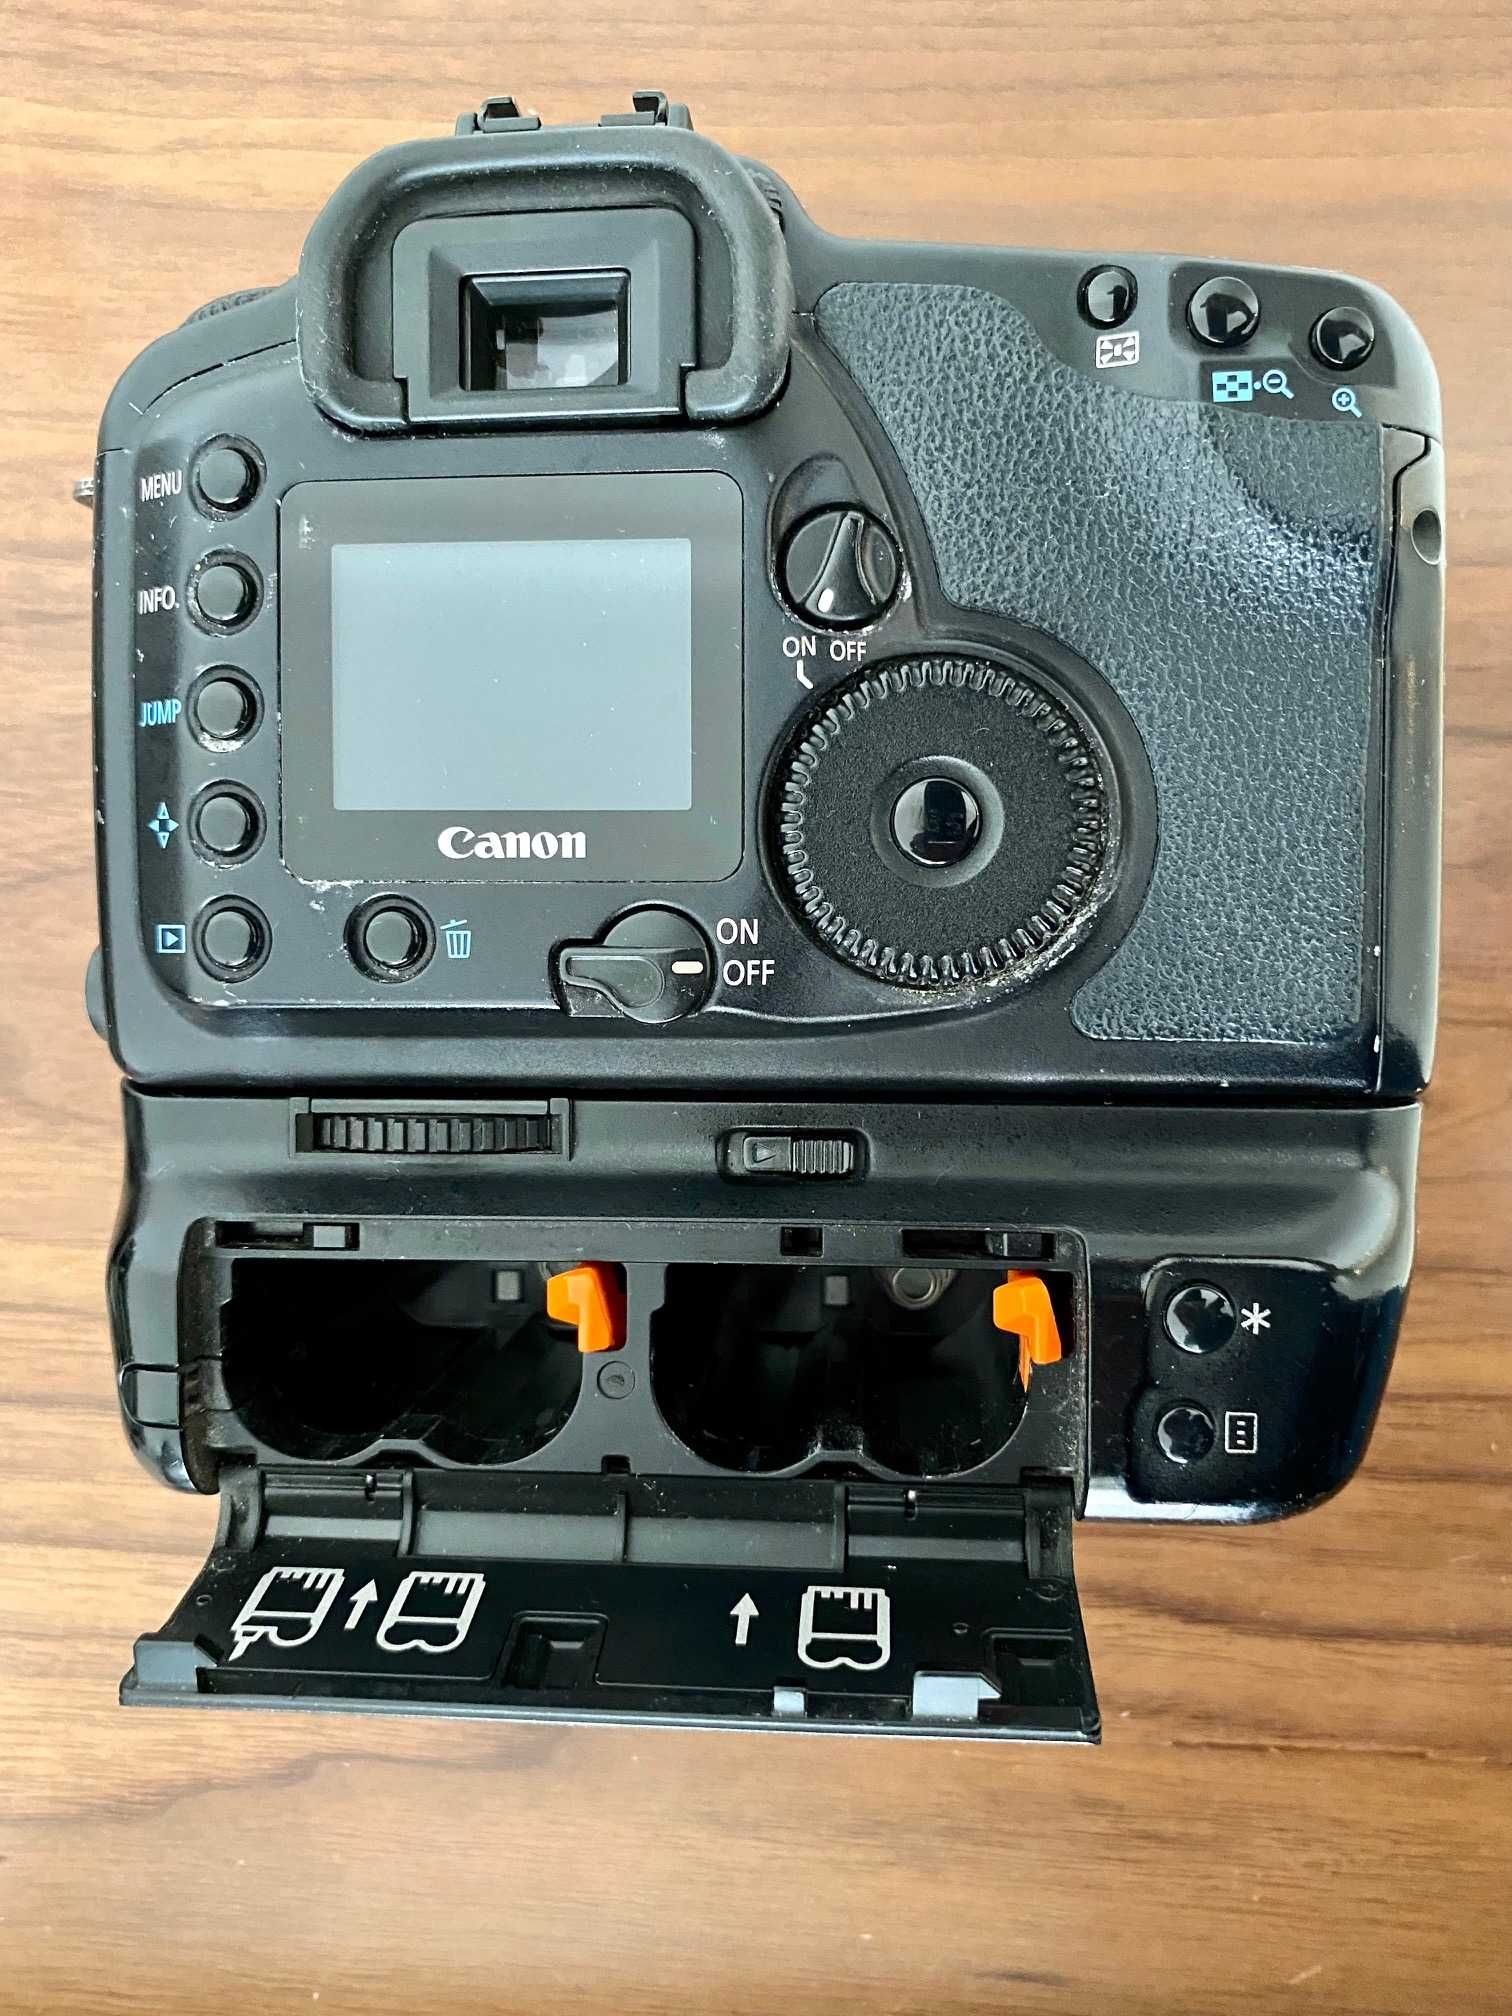 Câmara / máquina fotográfica Canon EOS 10D com Grip / Punho